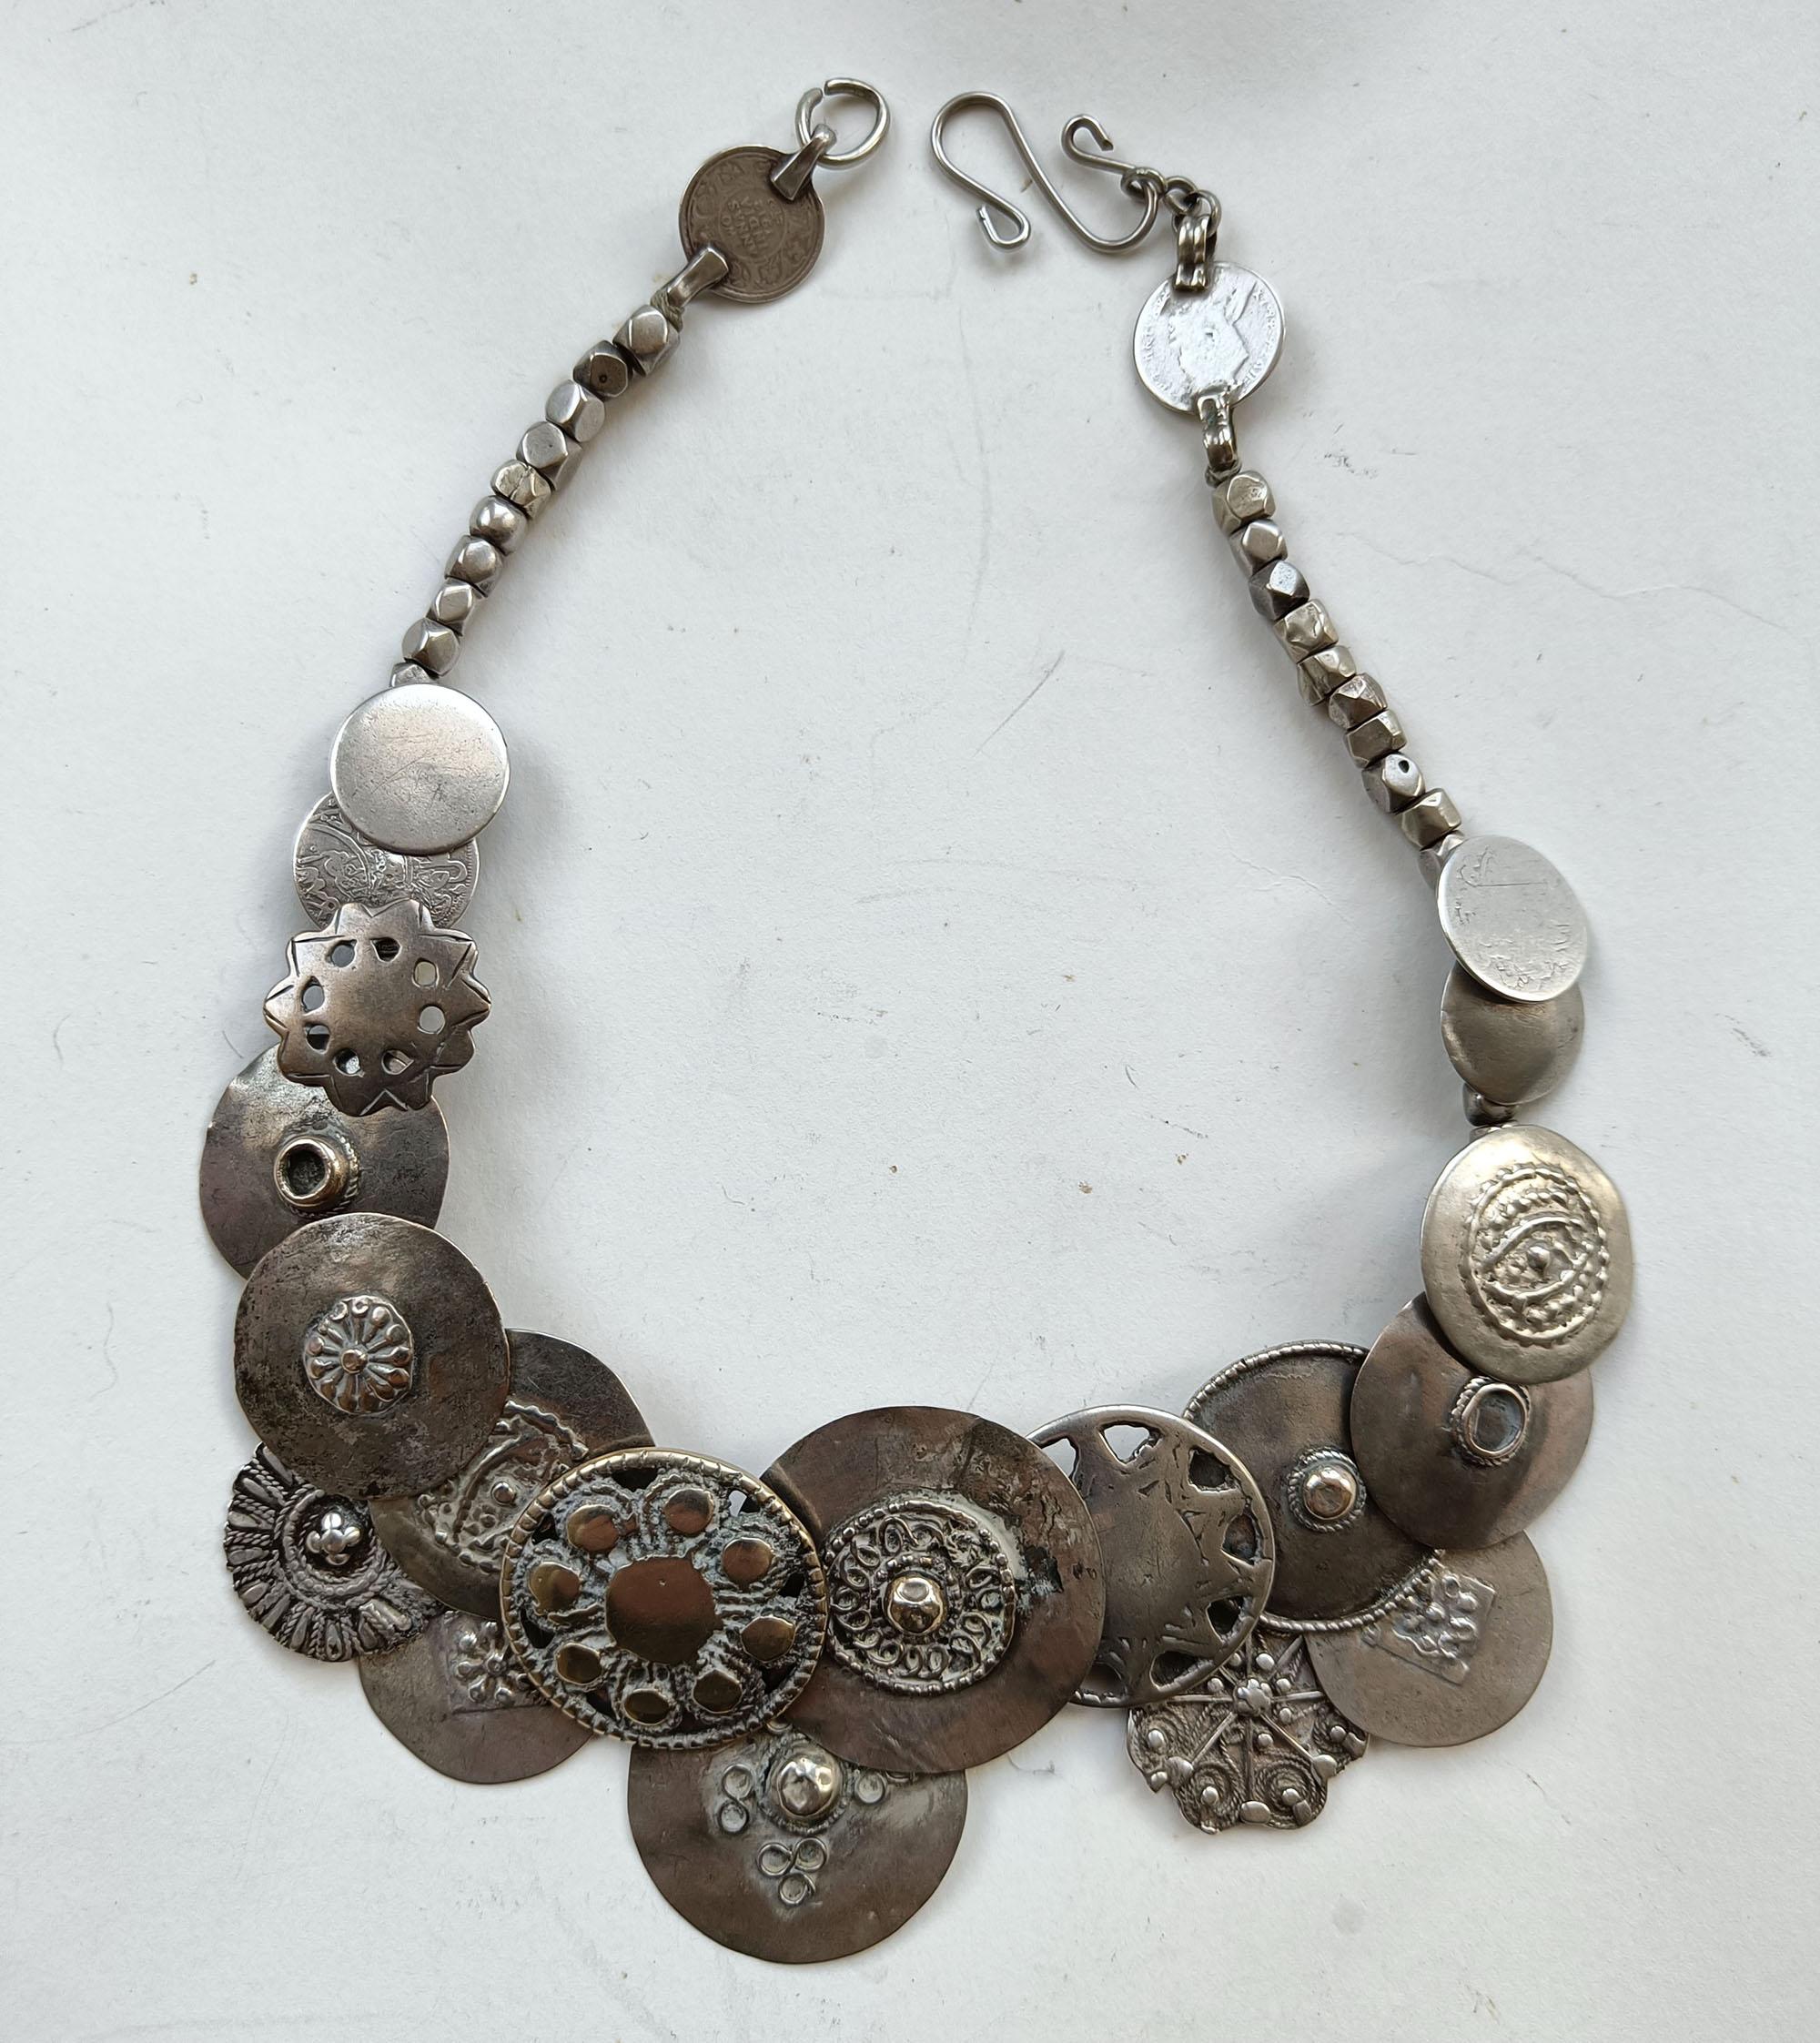  Indische Ethnographische Stammes-Silber Amulett Halskette Rajasthan
Seltene stilisierte Halskette mit einer Auswahl von Schild Typ Amulette das Ende mit Silbermünzen gemacht
Zeitraum frühes 20. Jahrhundert
Zustand: Gut.
 